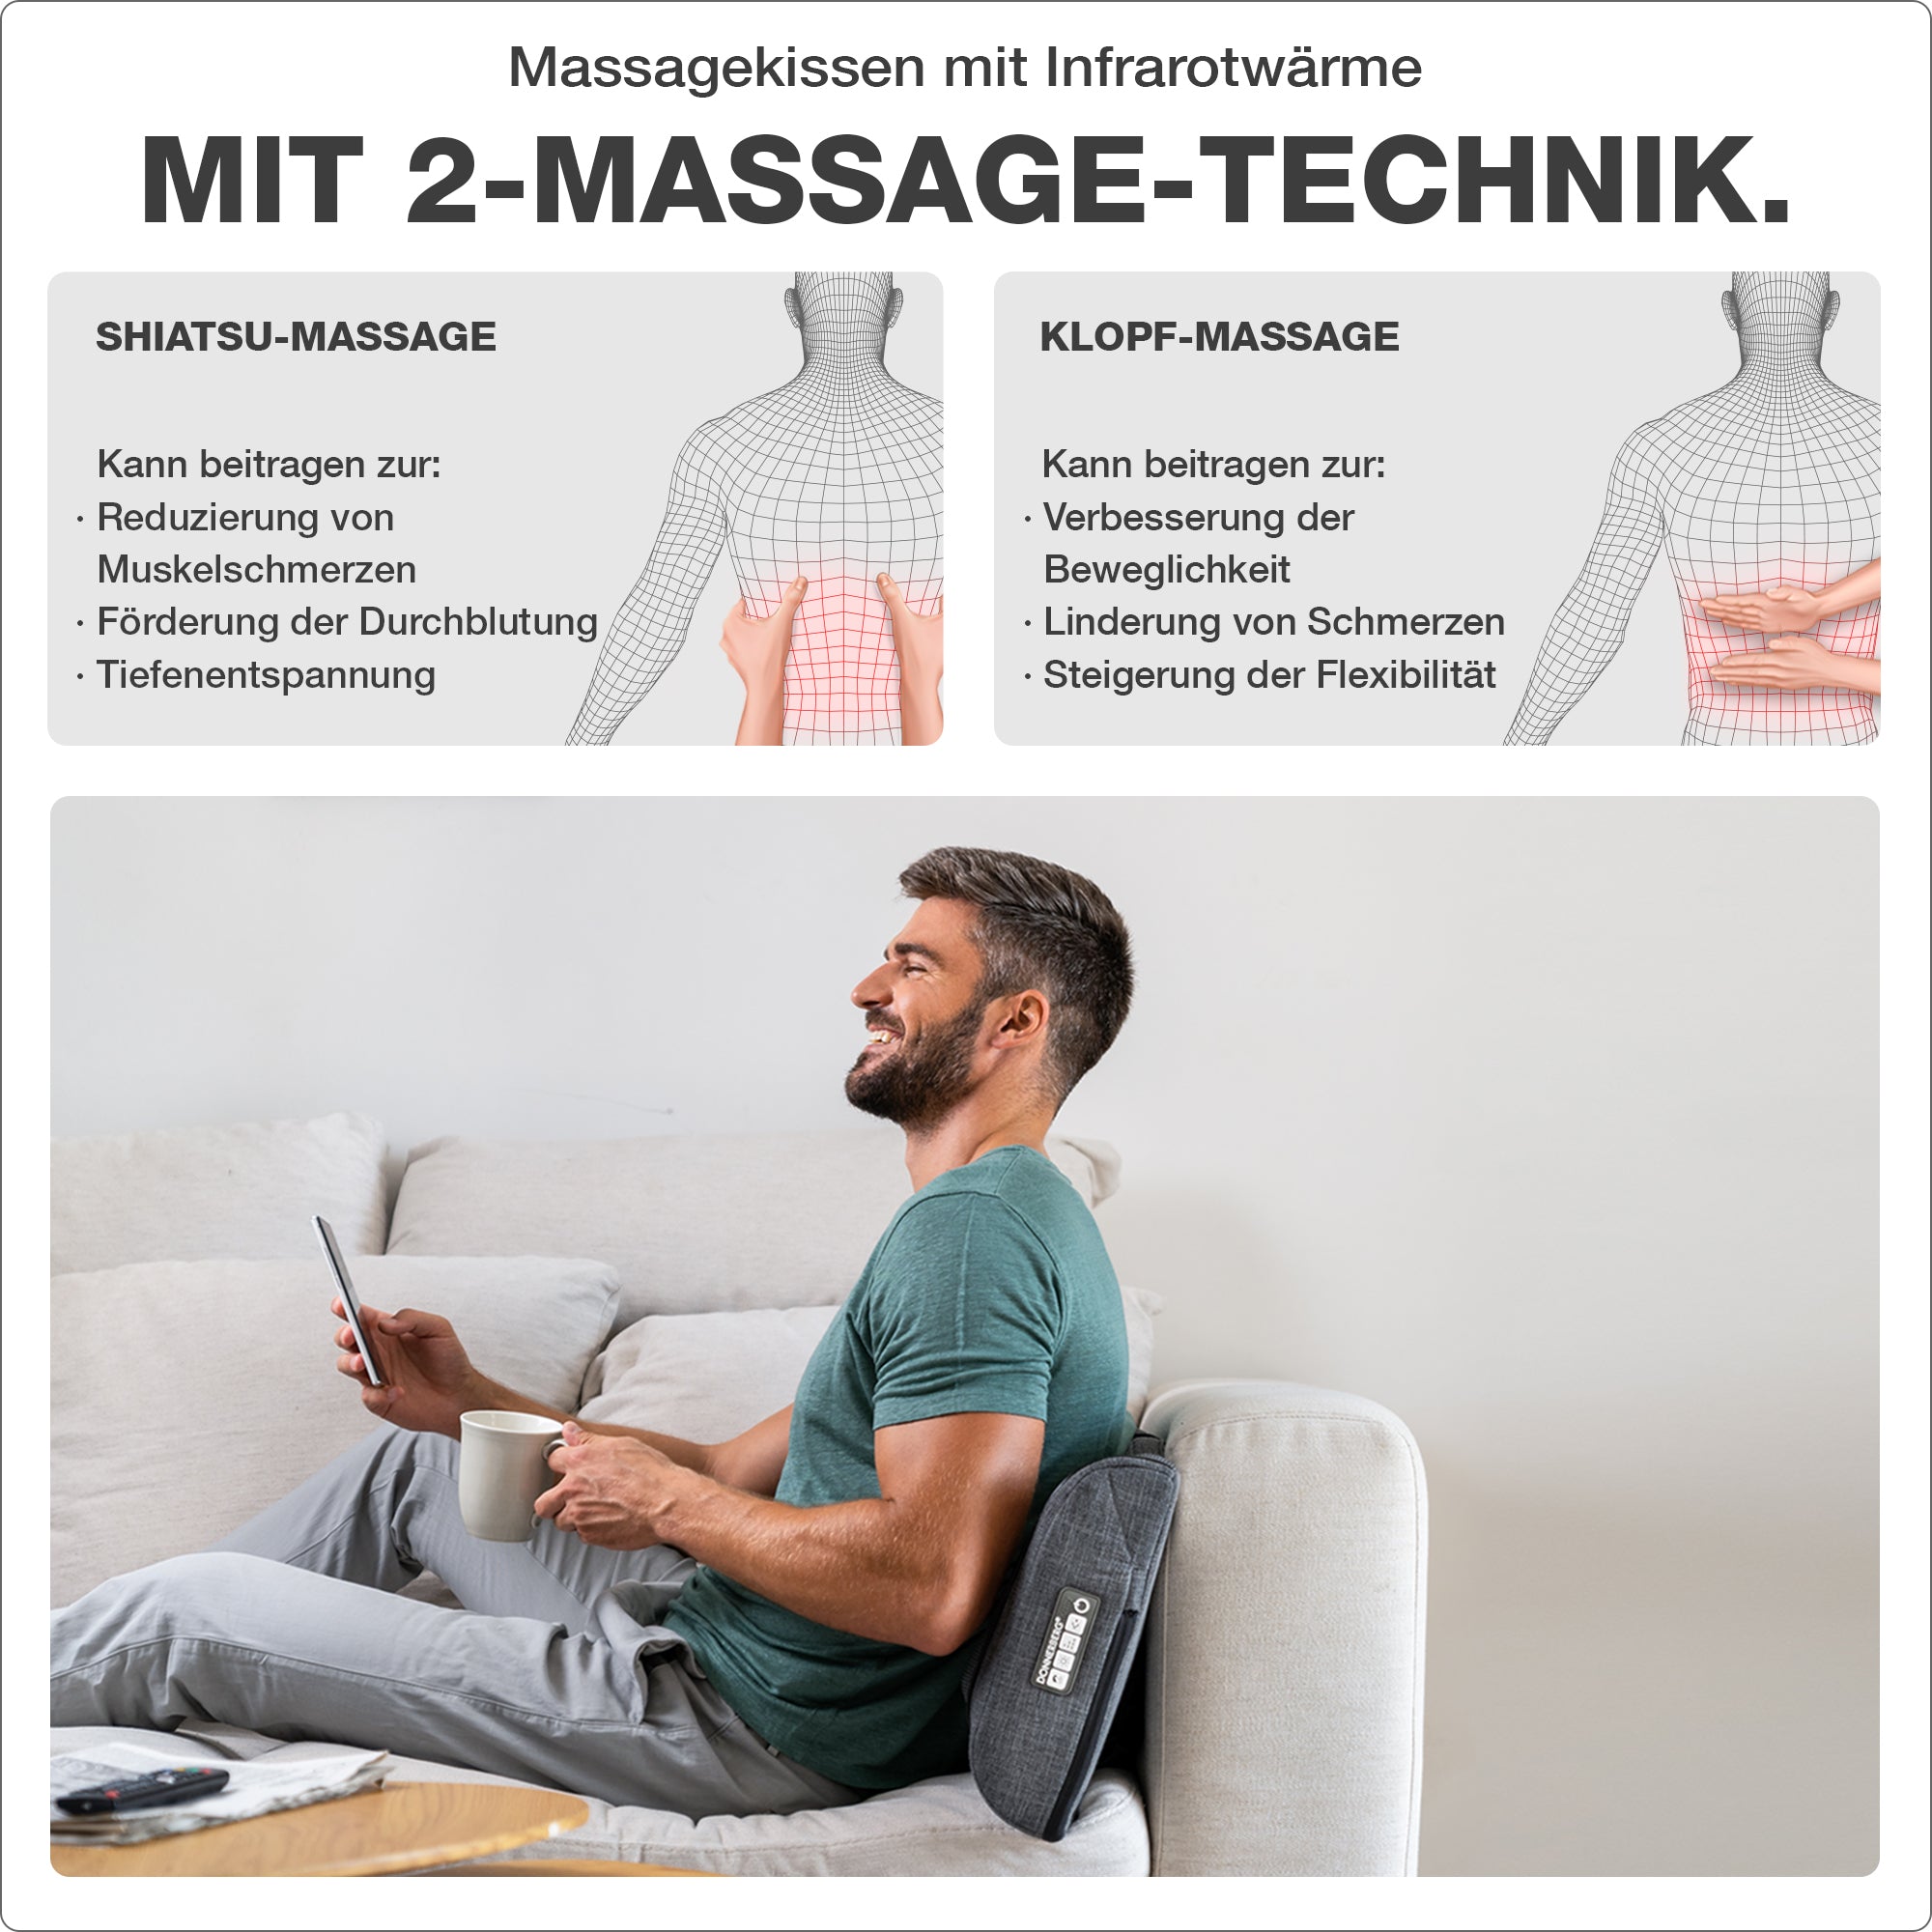 Zwei Massagetechnik: Shiatsu- und Klopfmassage